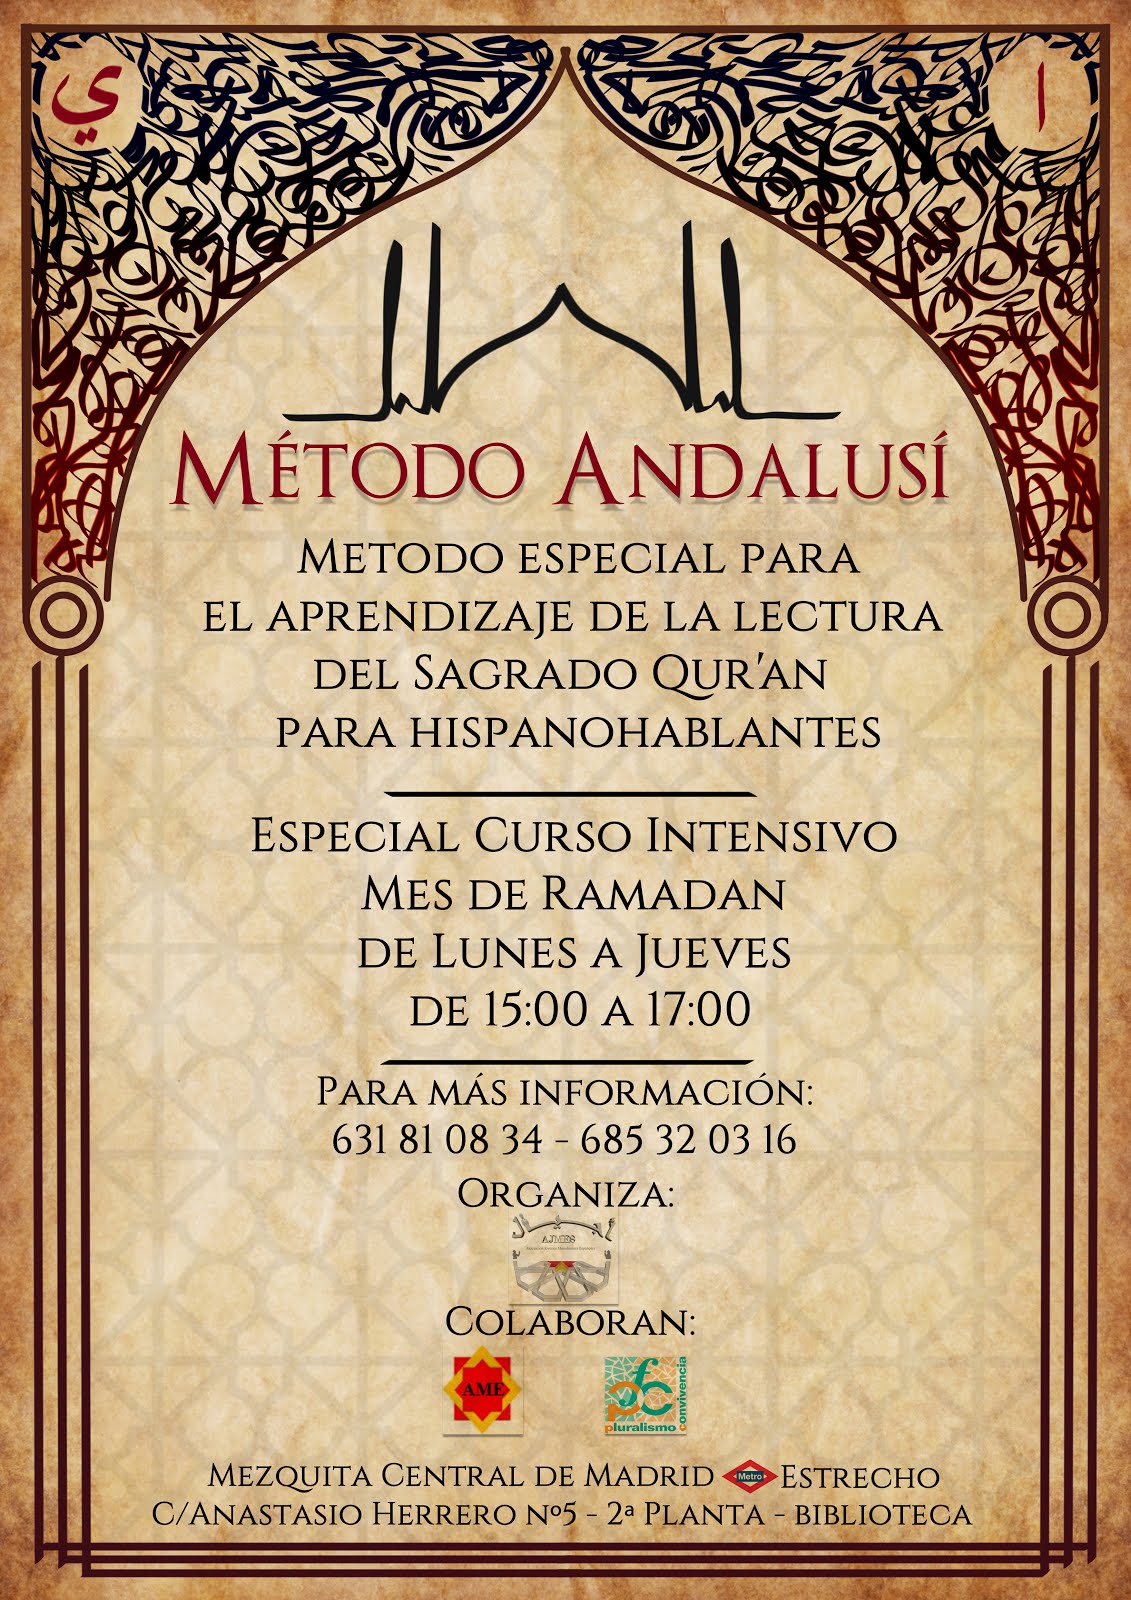 Curso intensivo  en el mes de ramadán del método andalusí